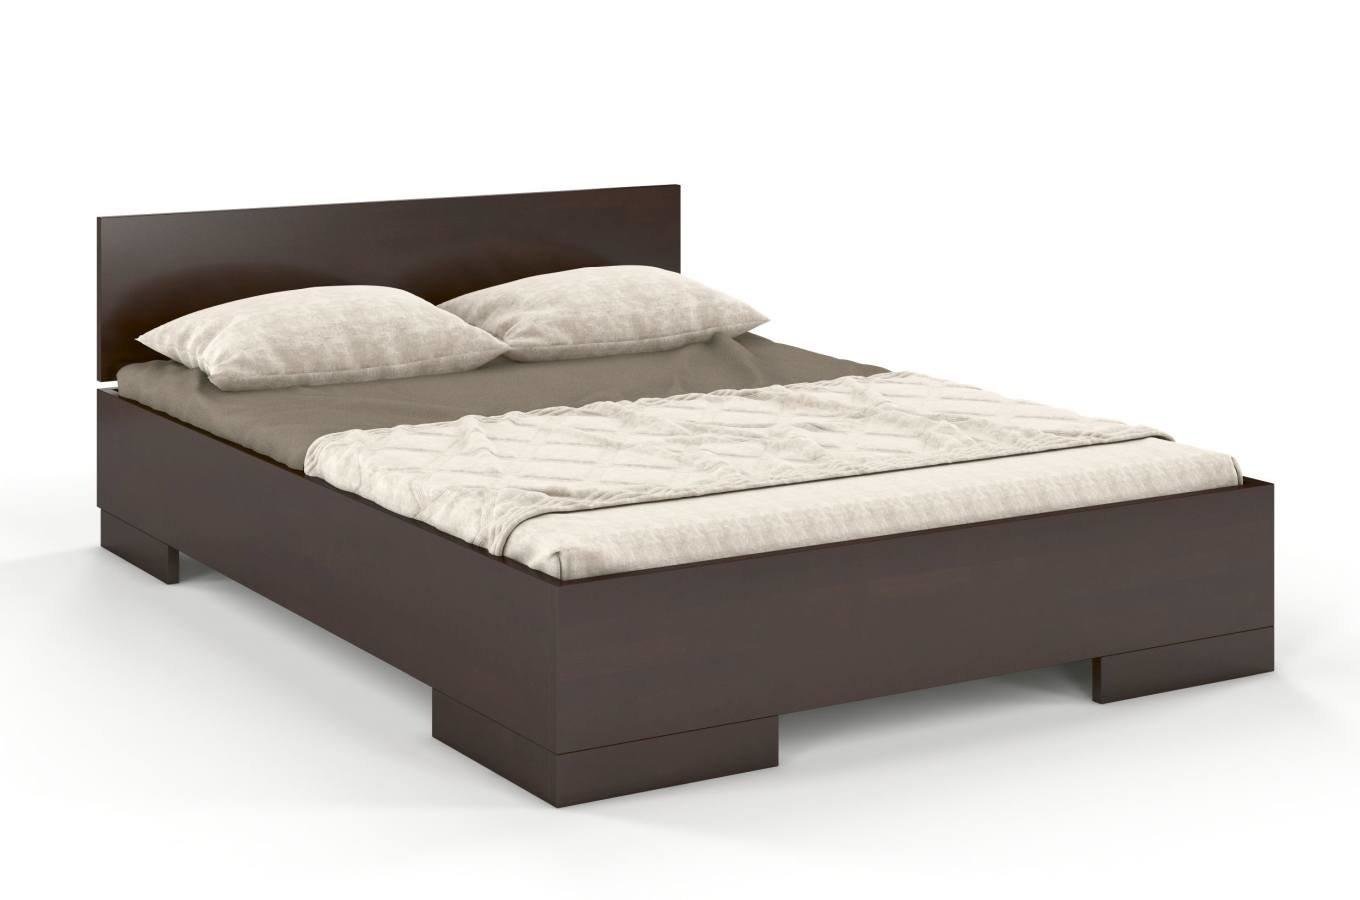 Łóżko drewniane bukowe Skandica SPECTRUM Maxi / 140x200 cm, kolor palisander